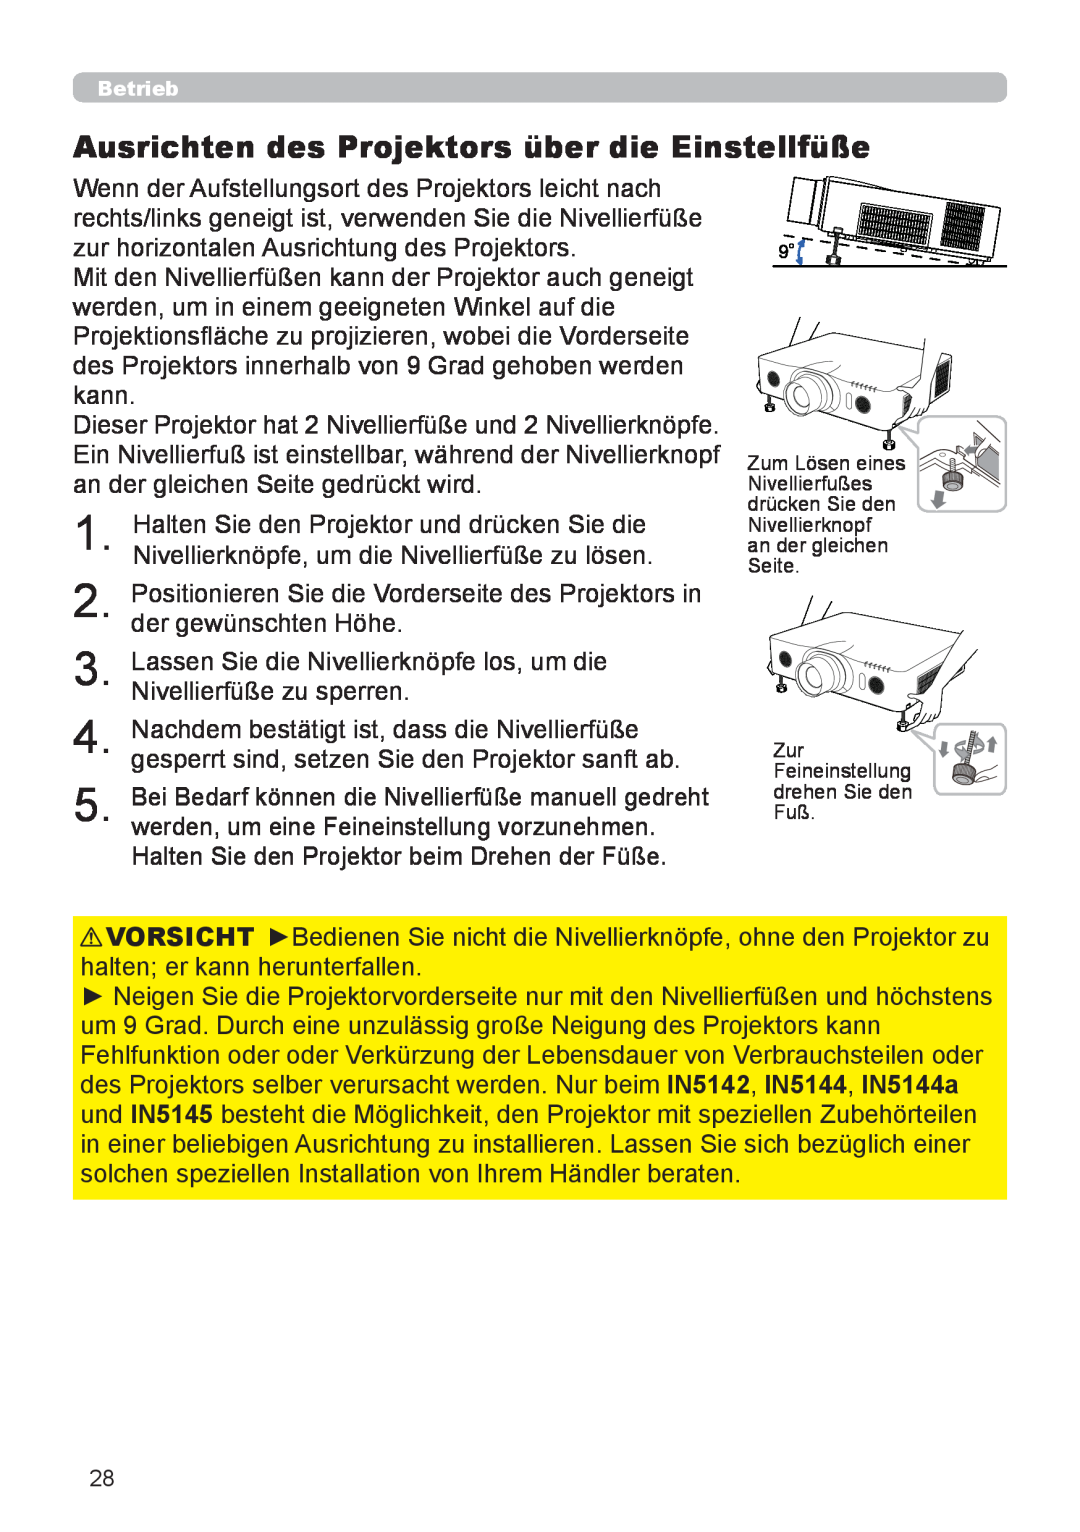 InFocus IN5132 user manual Ausrichten des Projektors über die Einstellfüße, Zur Feineinstellung drehen Sie den Fuß 